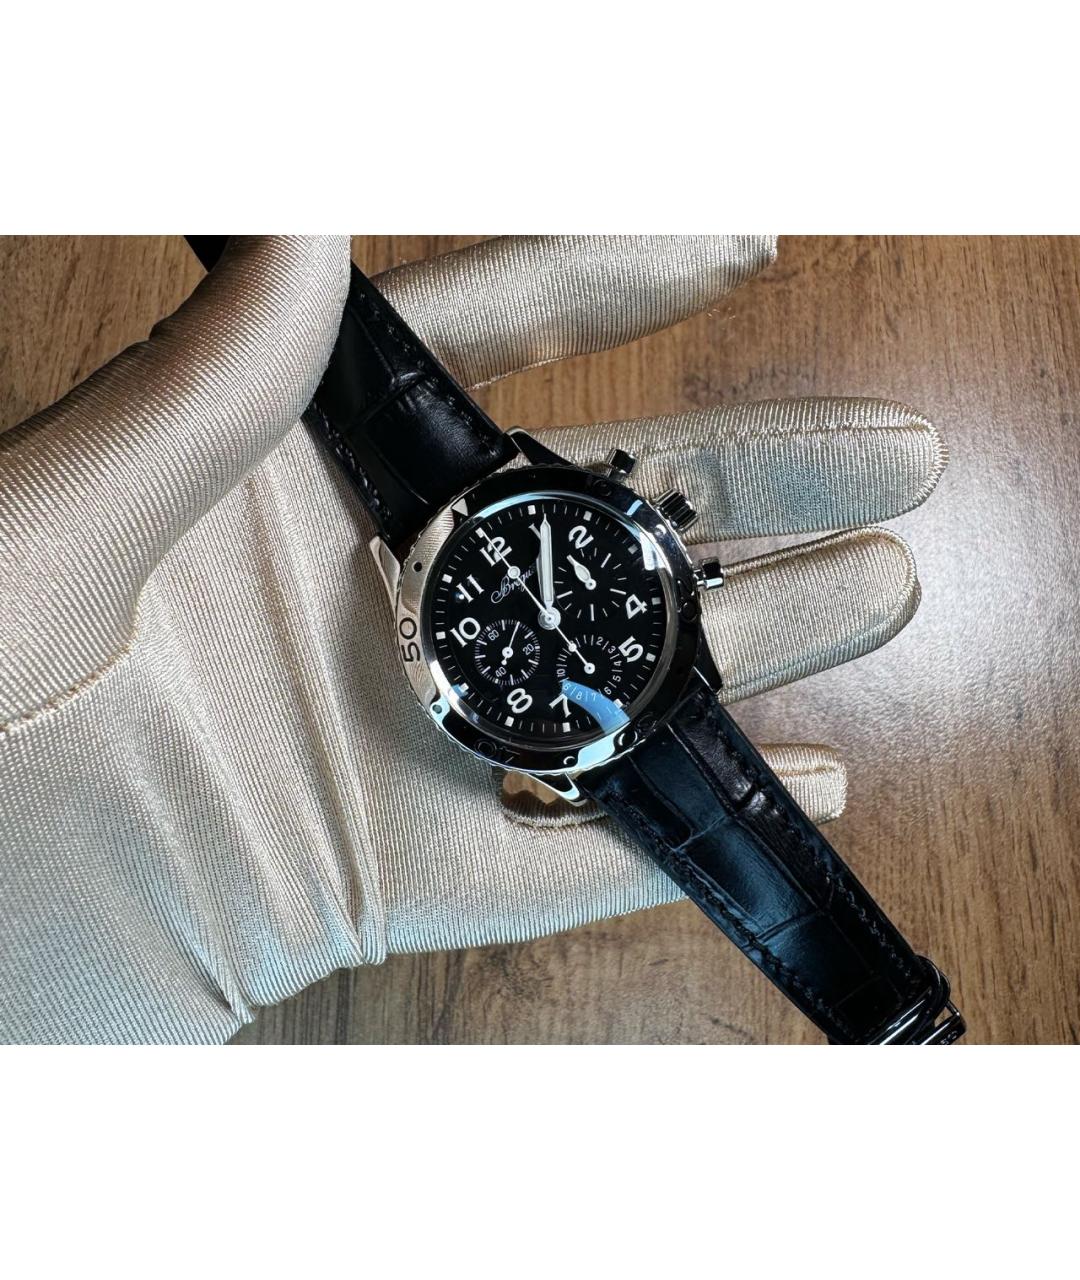 Breguet Черные металлические часы, фото 4